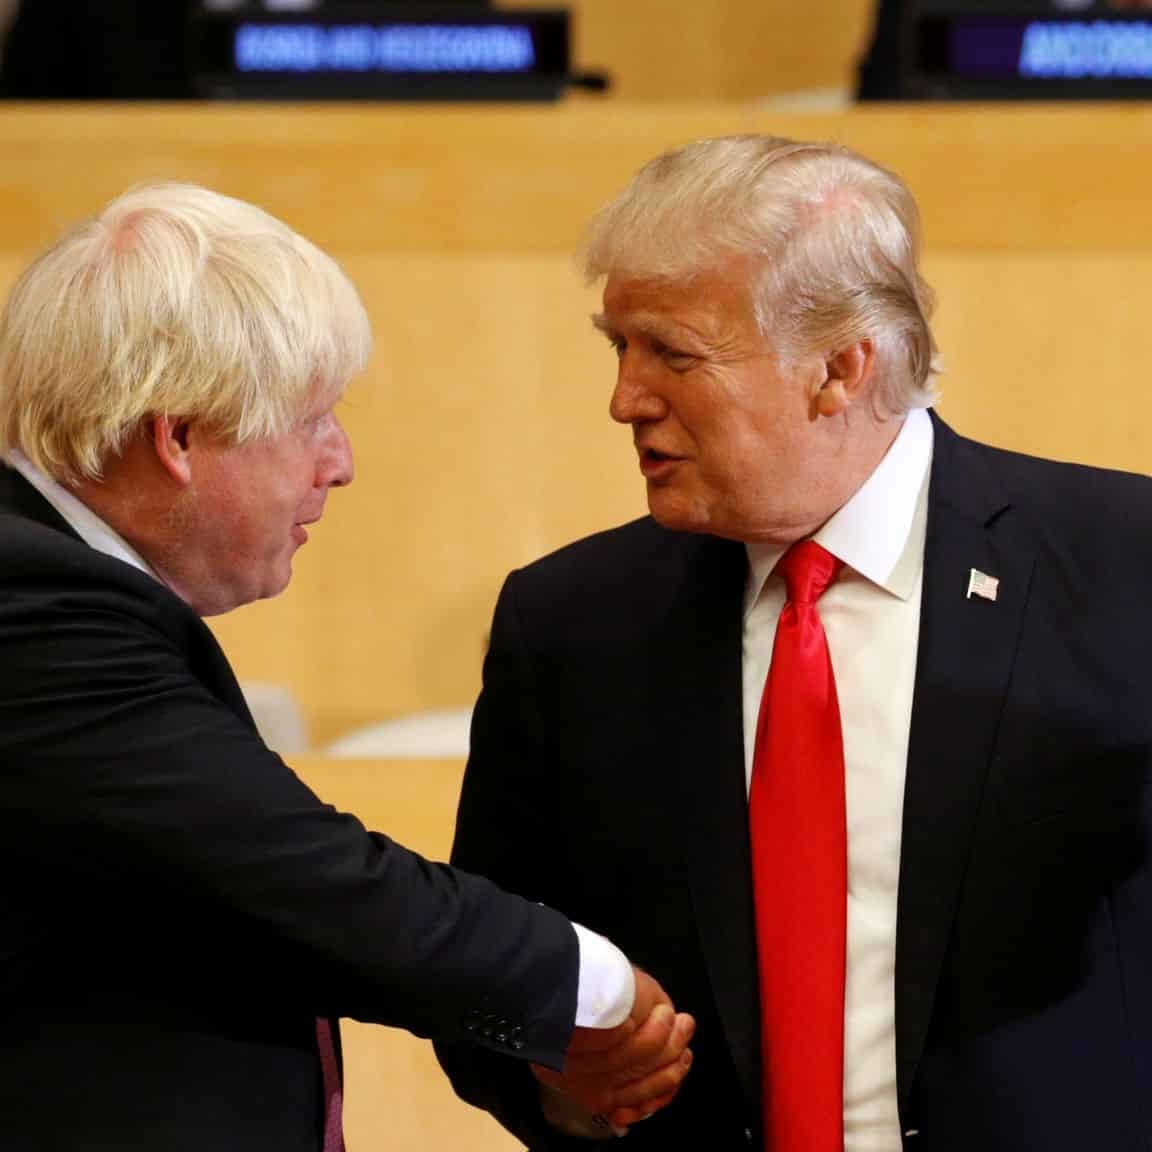 Trump e Johnson a braccetto in politica estera?